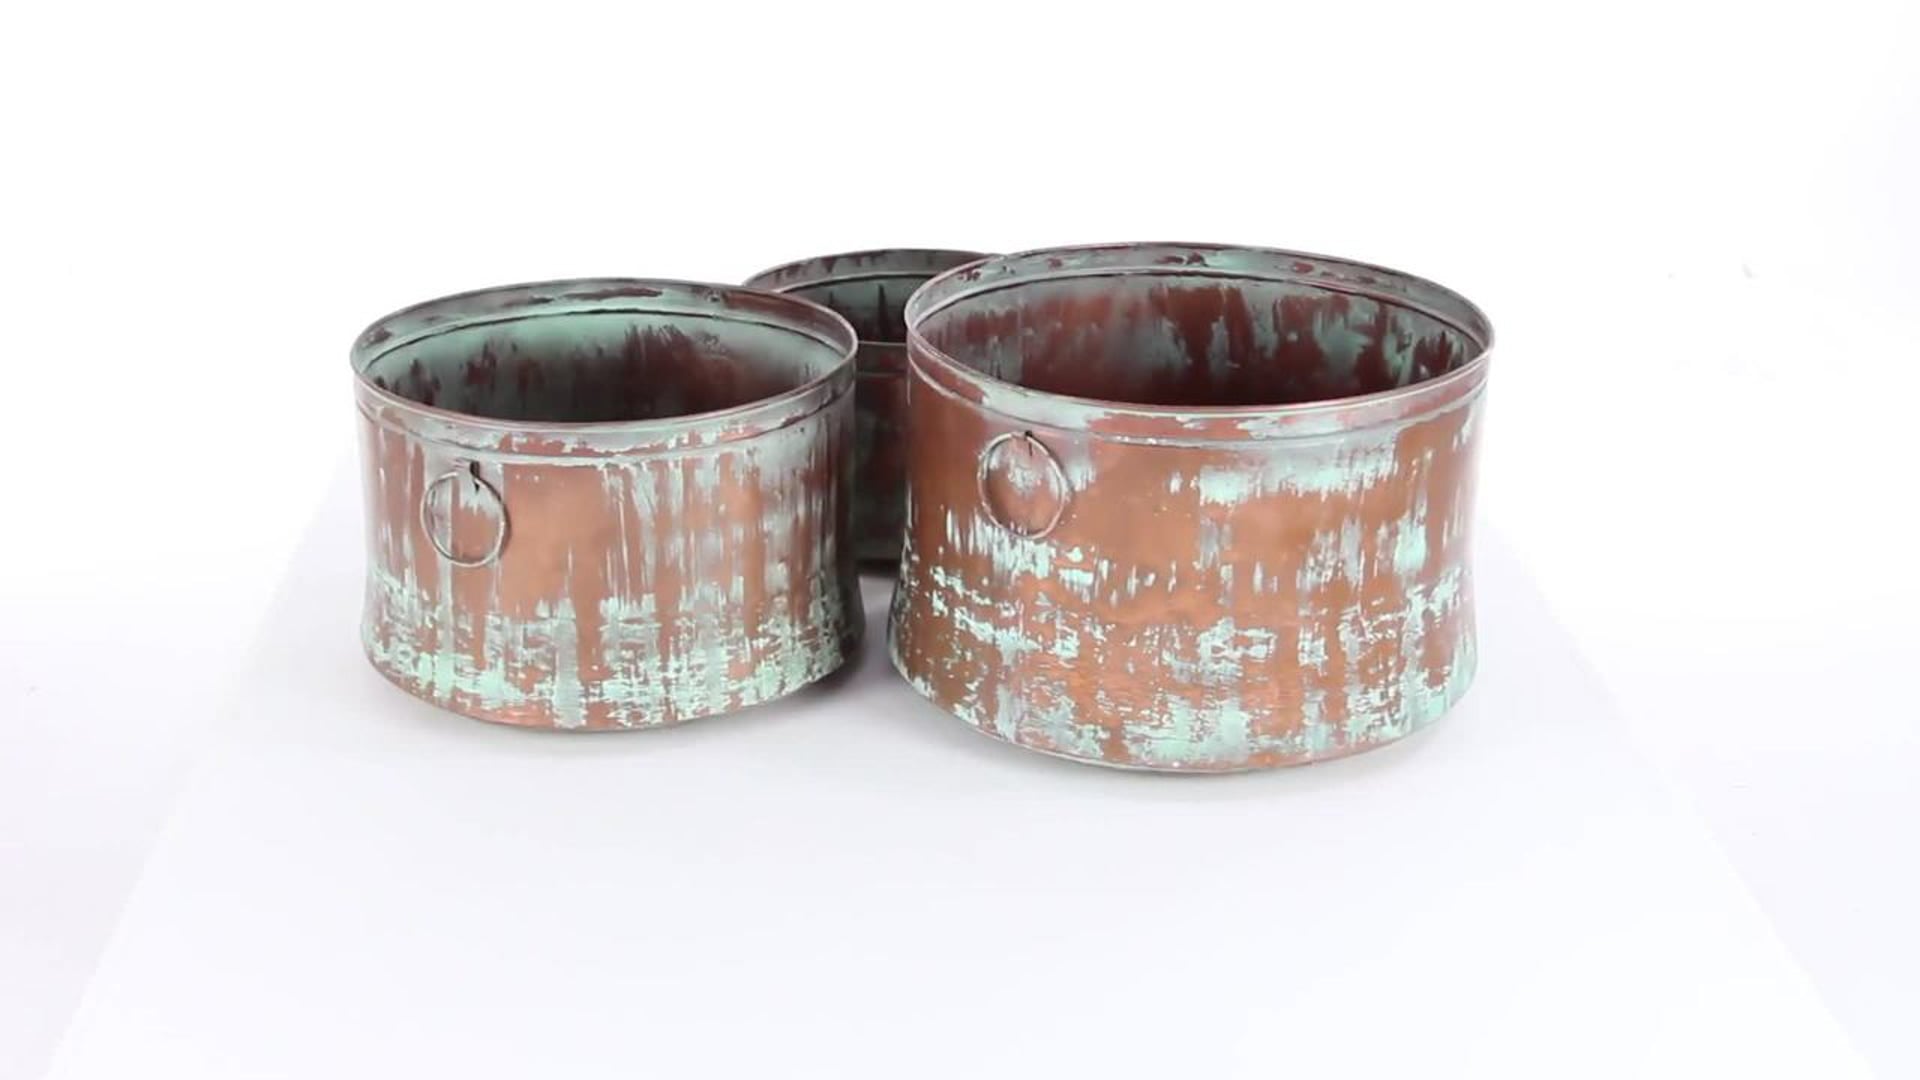 Rustic Copper Metal Planter Set 26905